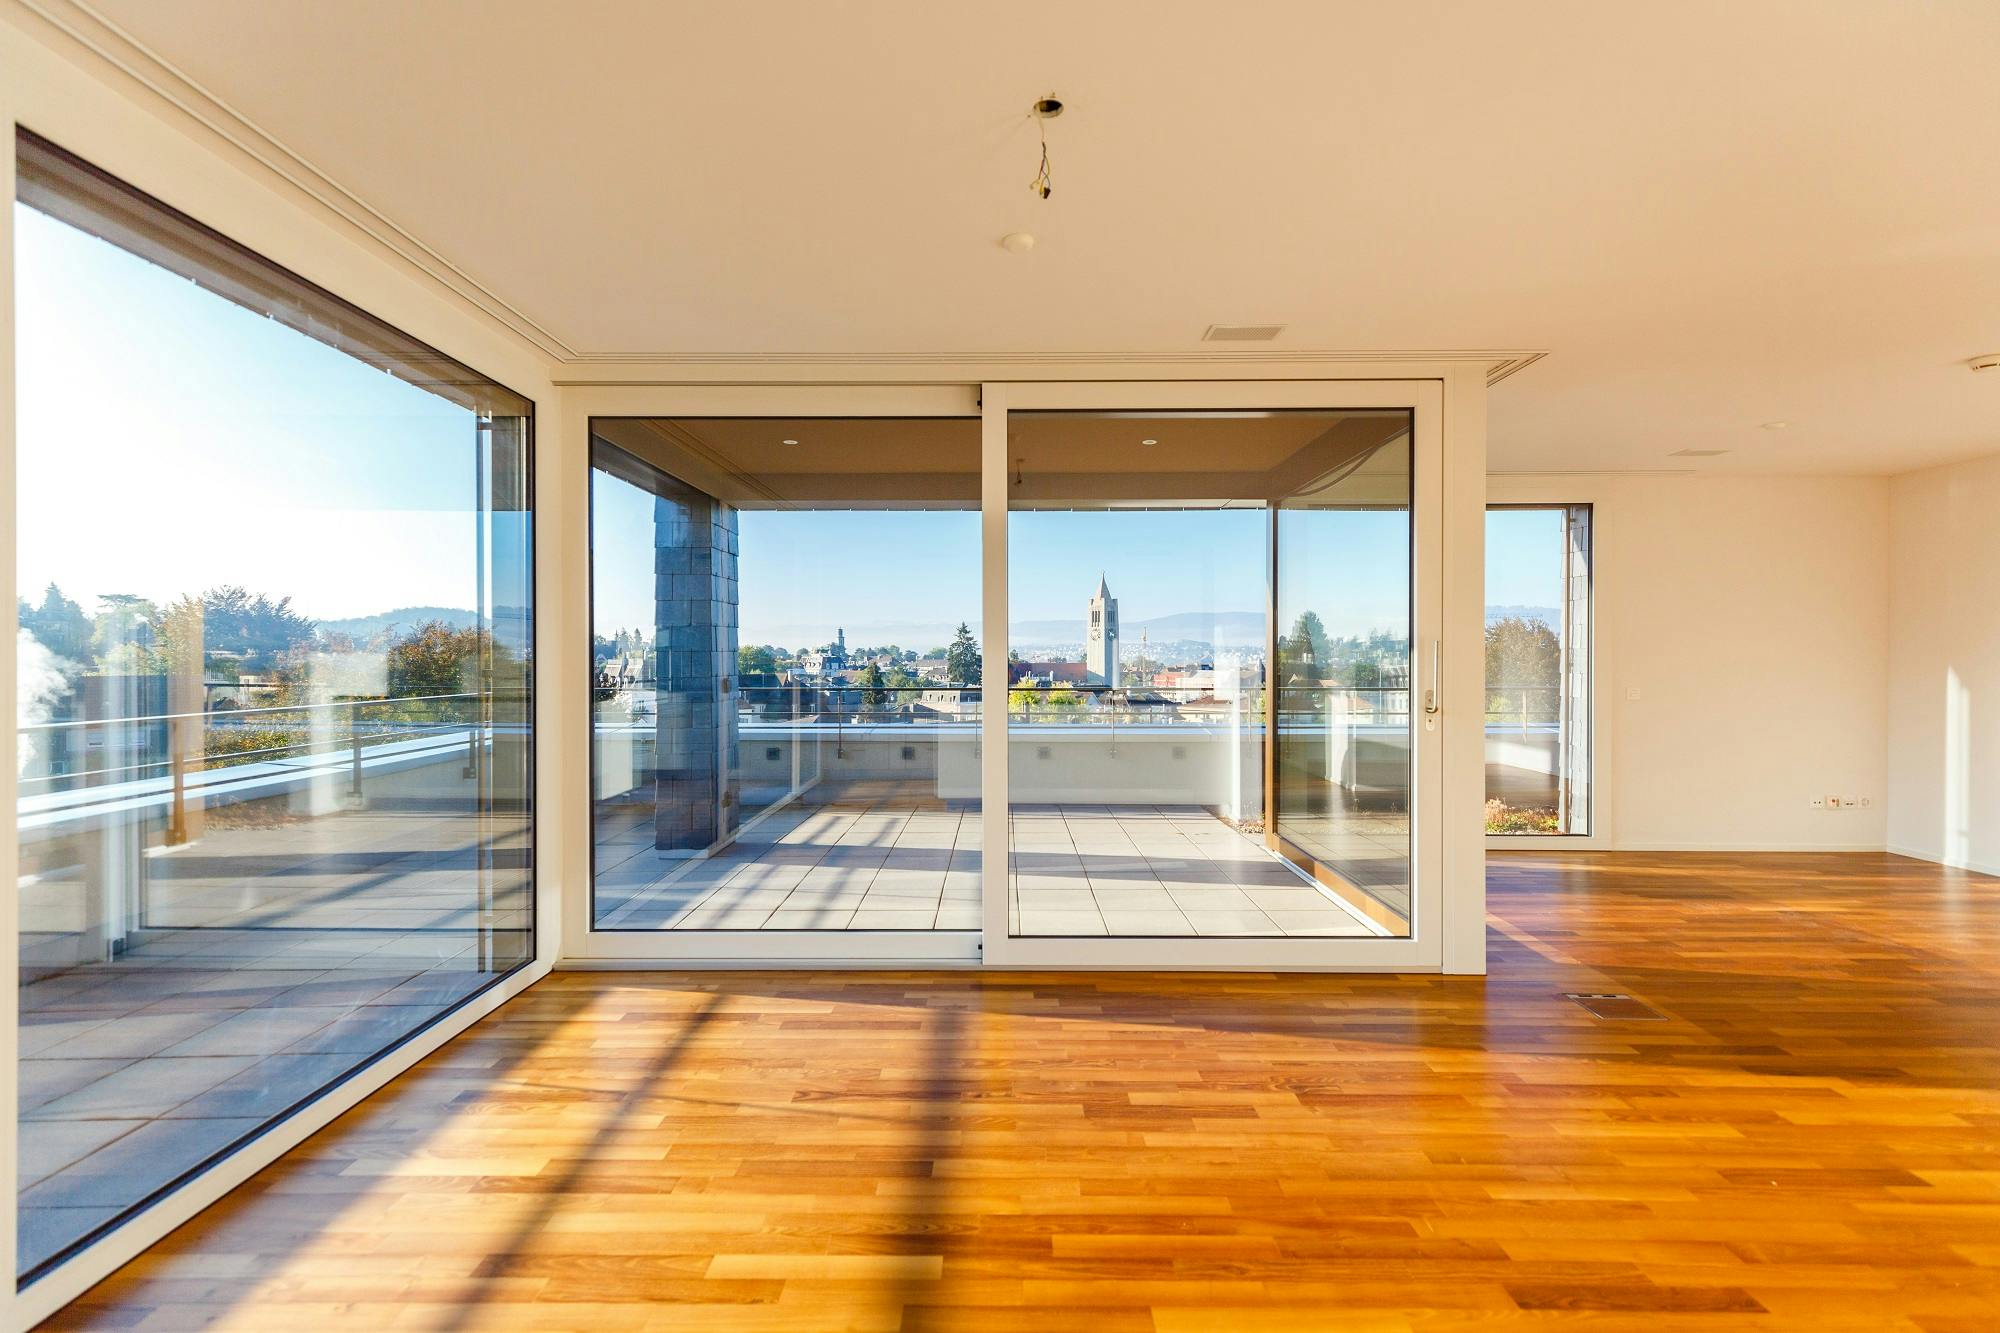 Helles, modernes Wohnzimmer mit Parkettboden und Glas-Schiebetür zur Terrasse mit Stadtblick.